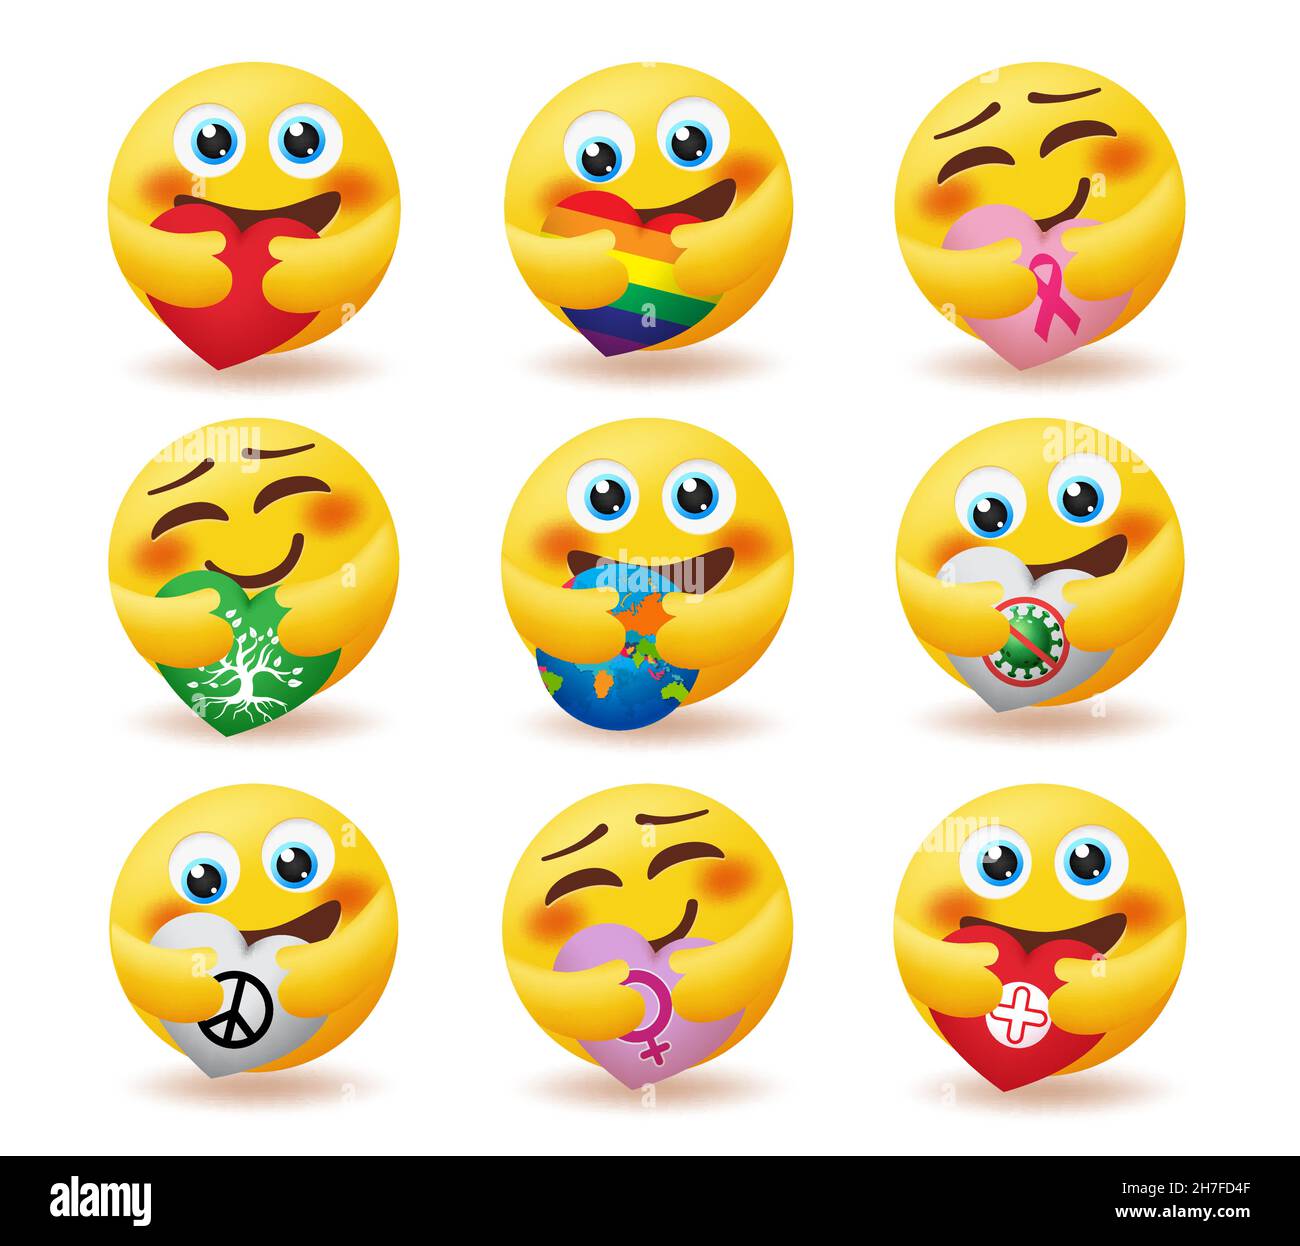 Emoji Care Emoticon-Vektor-Set. Emoticons Smiley-Zeichen in Umarmung Pose mit Herzelementen der Welt, des Friedens und der Natur für Emojis fürsorglichen Charakter. Stock Vektor